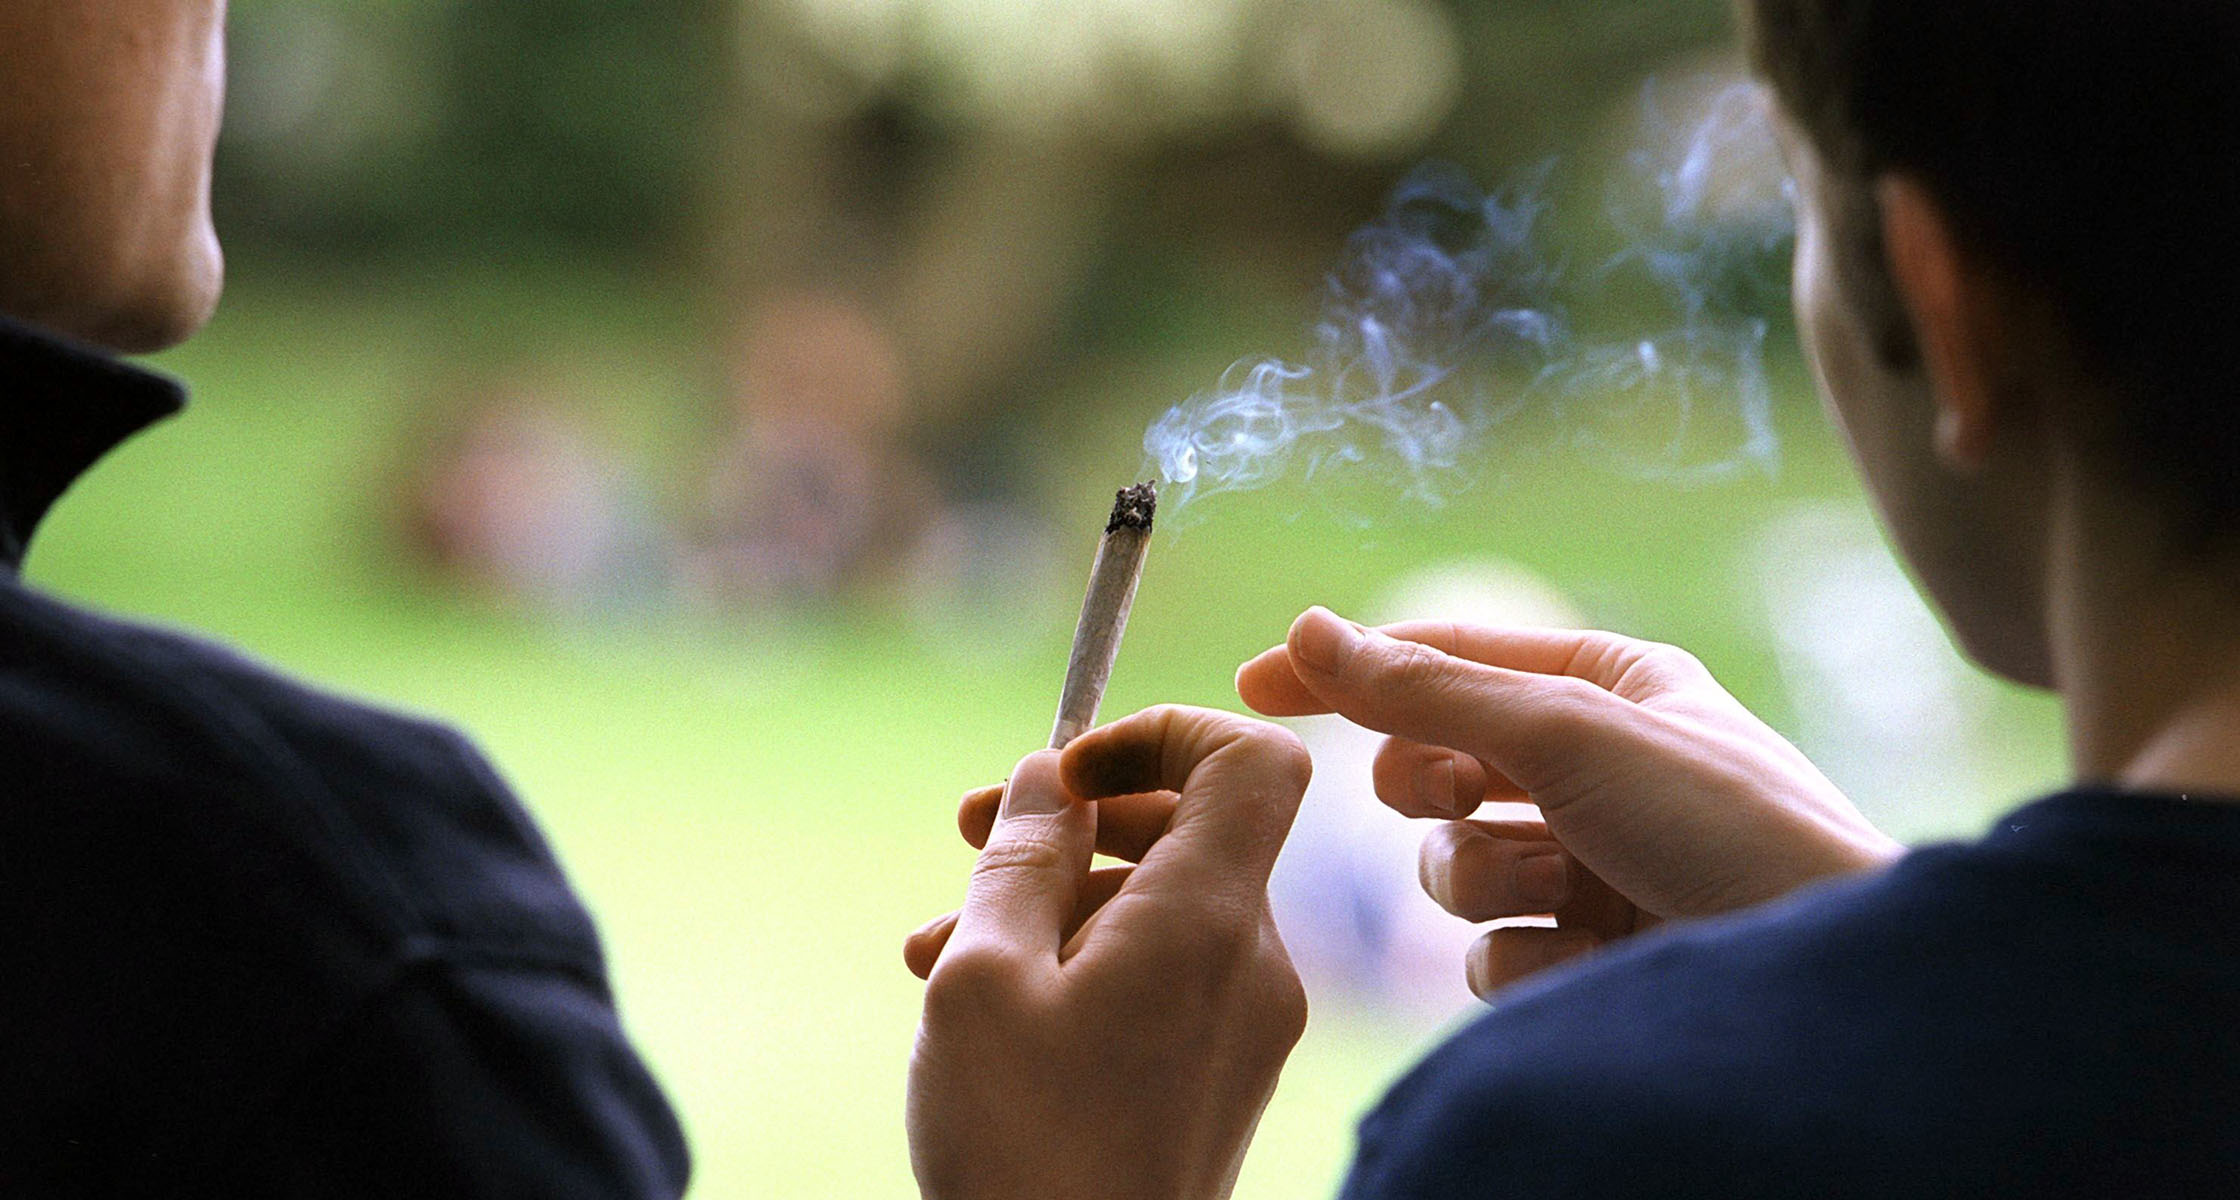 Działanie Marihuany na Młodzieńczy Mózg, GazetaKonopna